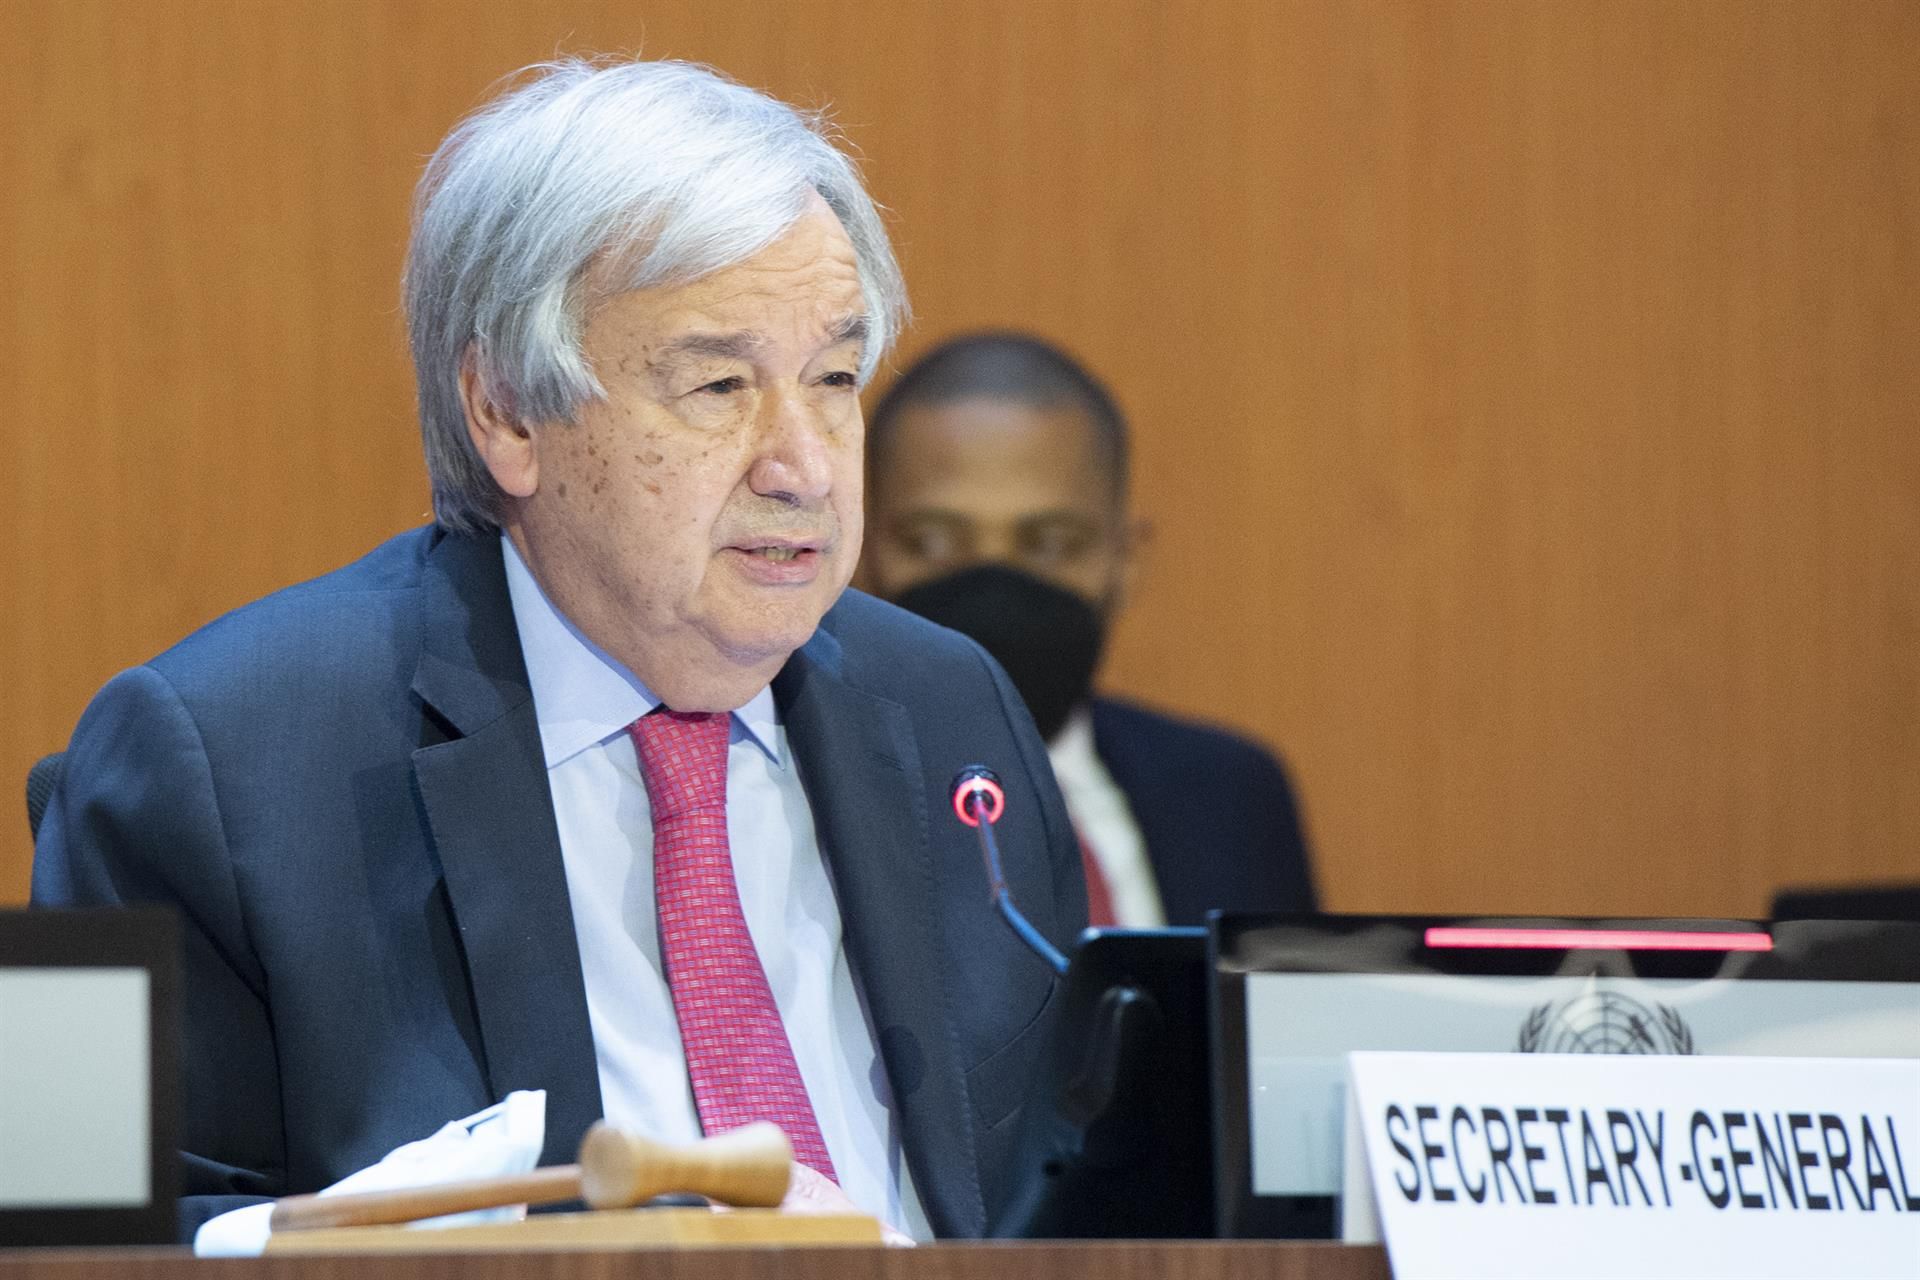 El secretario general de Naciones Unidas, António Guterres, advierte de que se nos acaba el tiempo / Foto: Violaine Martin - EP